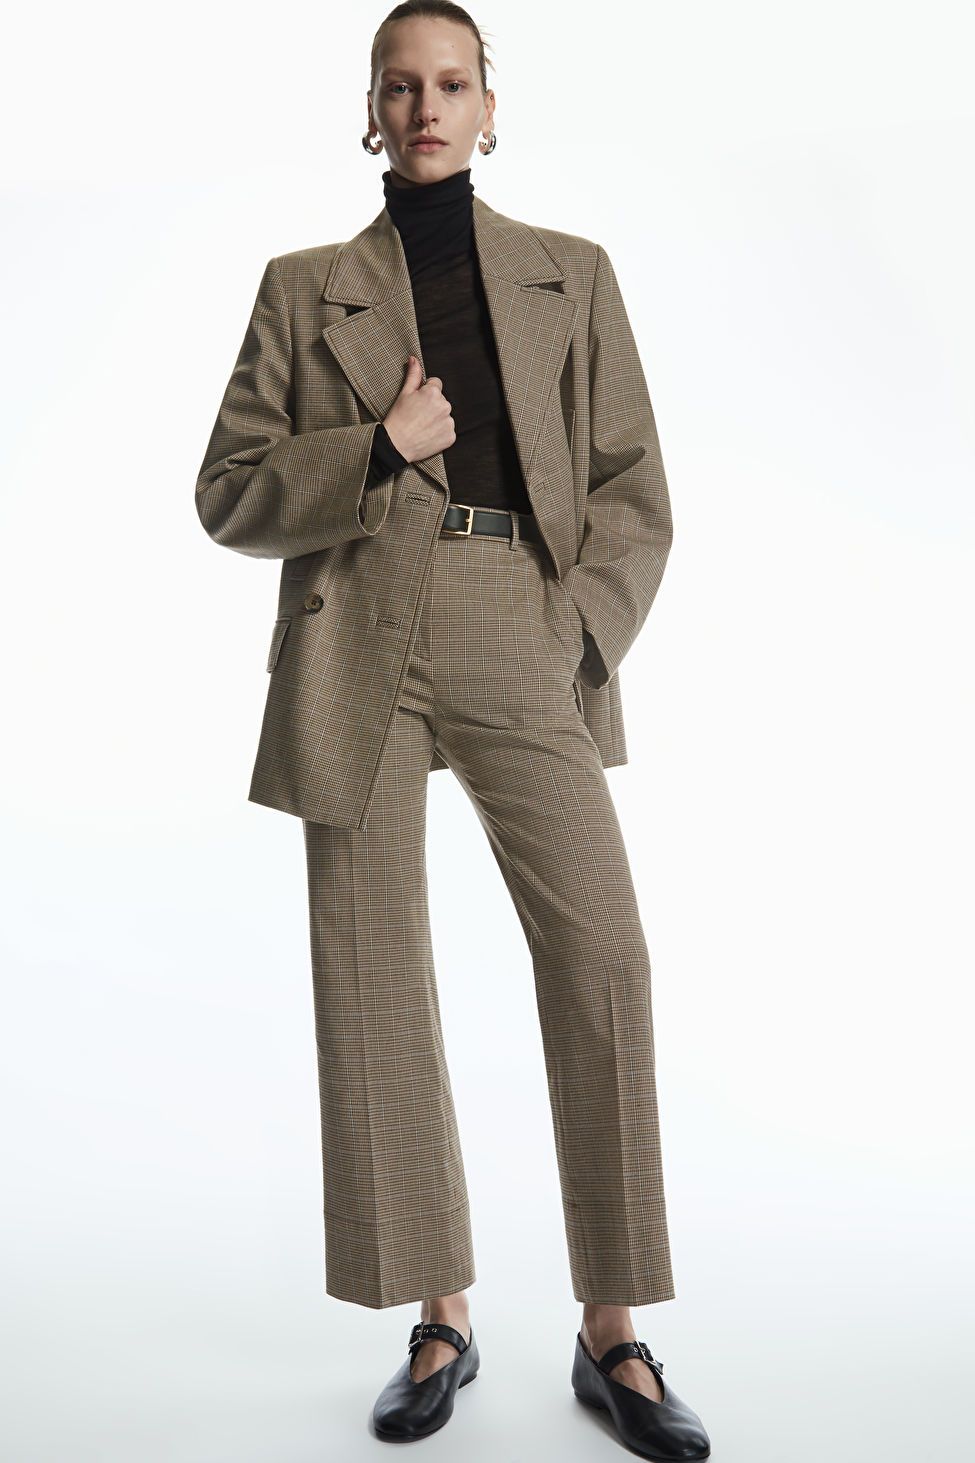 Trinny Woodall looks effortlessly chic in tweed suit by Me + Em